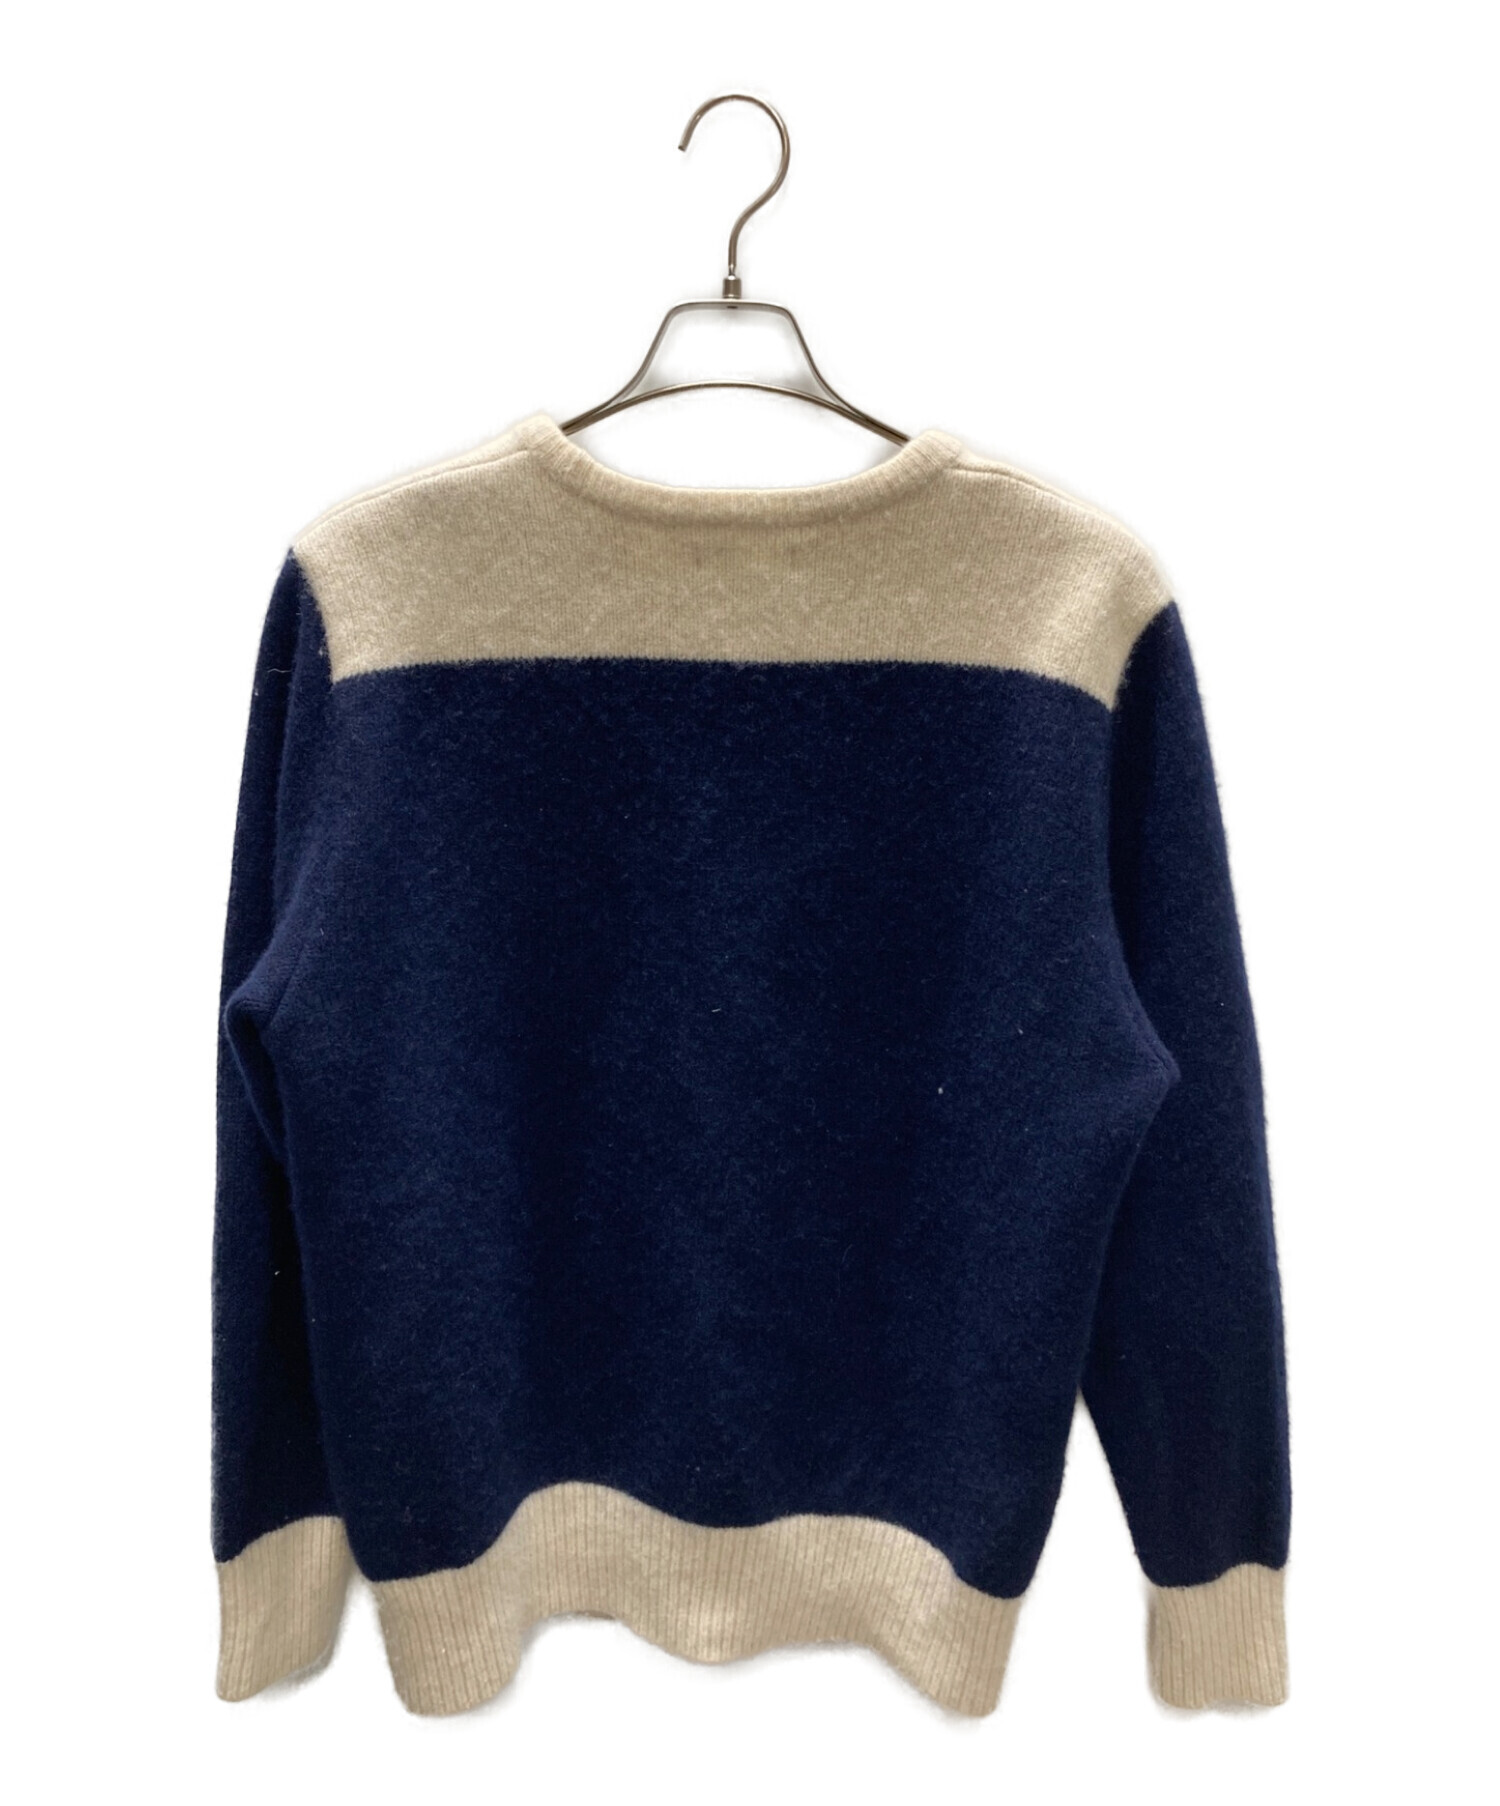 ORGUEIL (オルゲイユ) Knit sweater/ニットセーター ネイビー×ベージュ サイズ:40